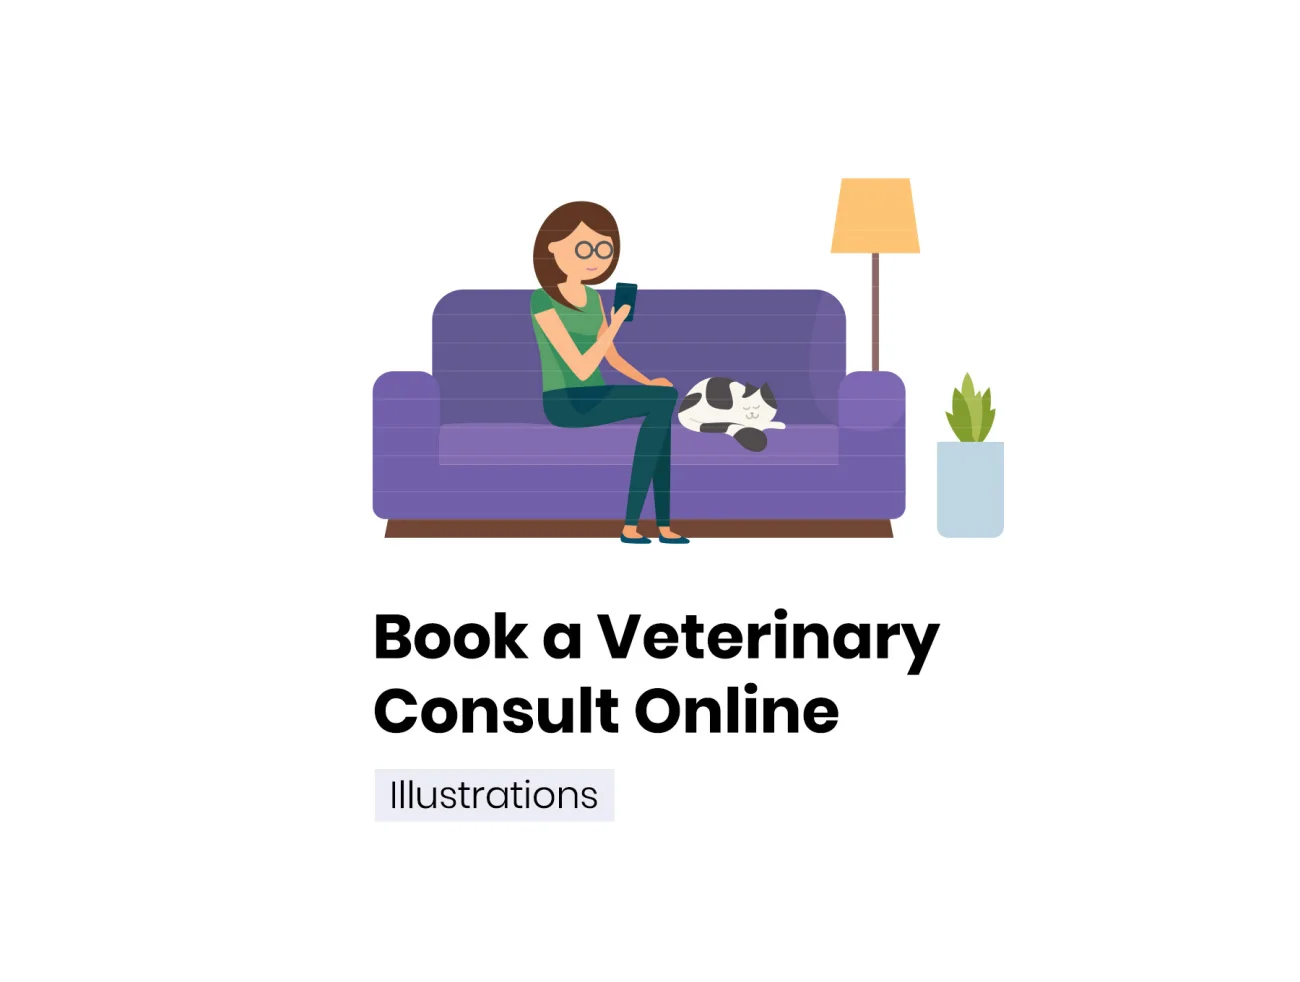 Book a Veterinary Consult Online 在线预订兽医咨询UI素材-ui套件、主页、人物插画、场景插画、插画、插画功能、插画风格、教育医疗、概念创意、线条手绘、网站、营销创业、预订-到位啦UI